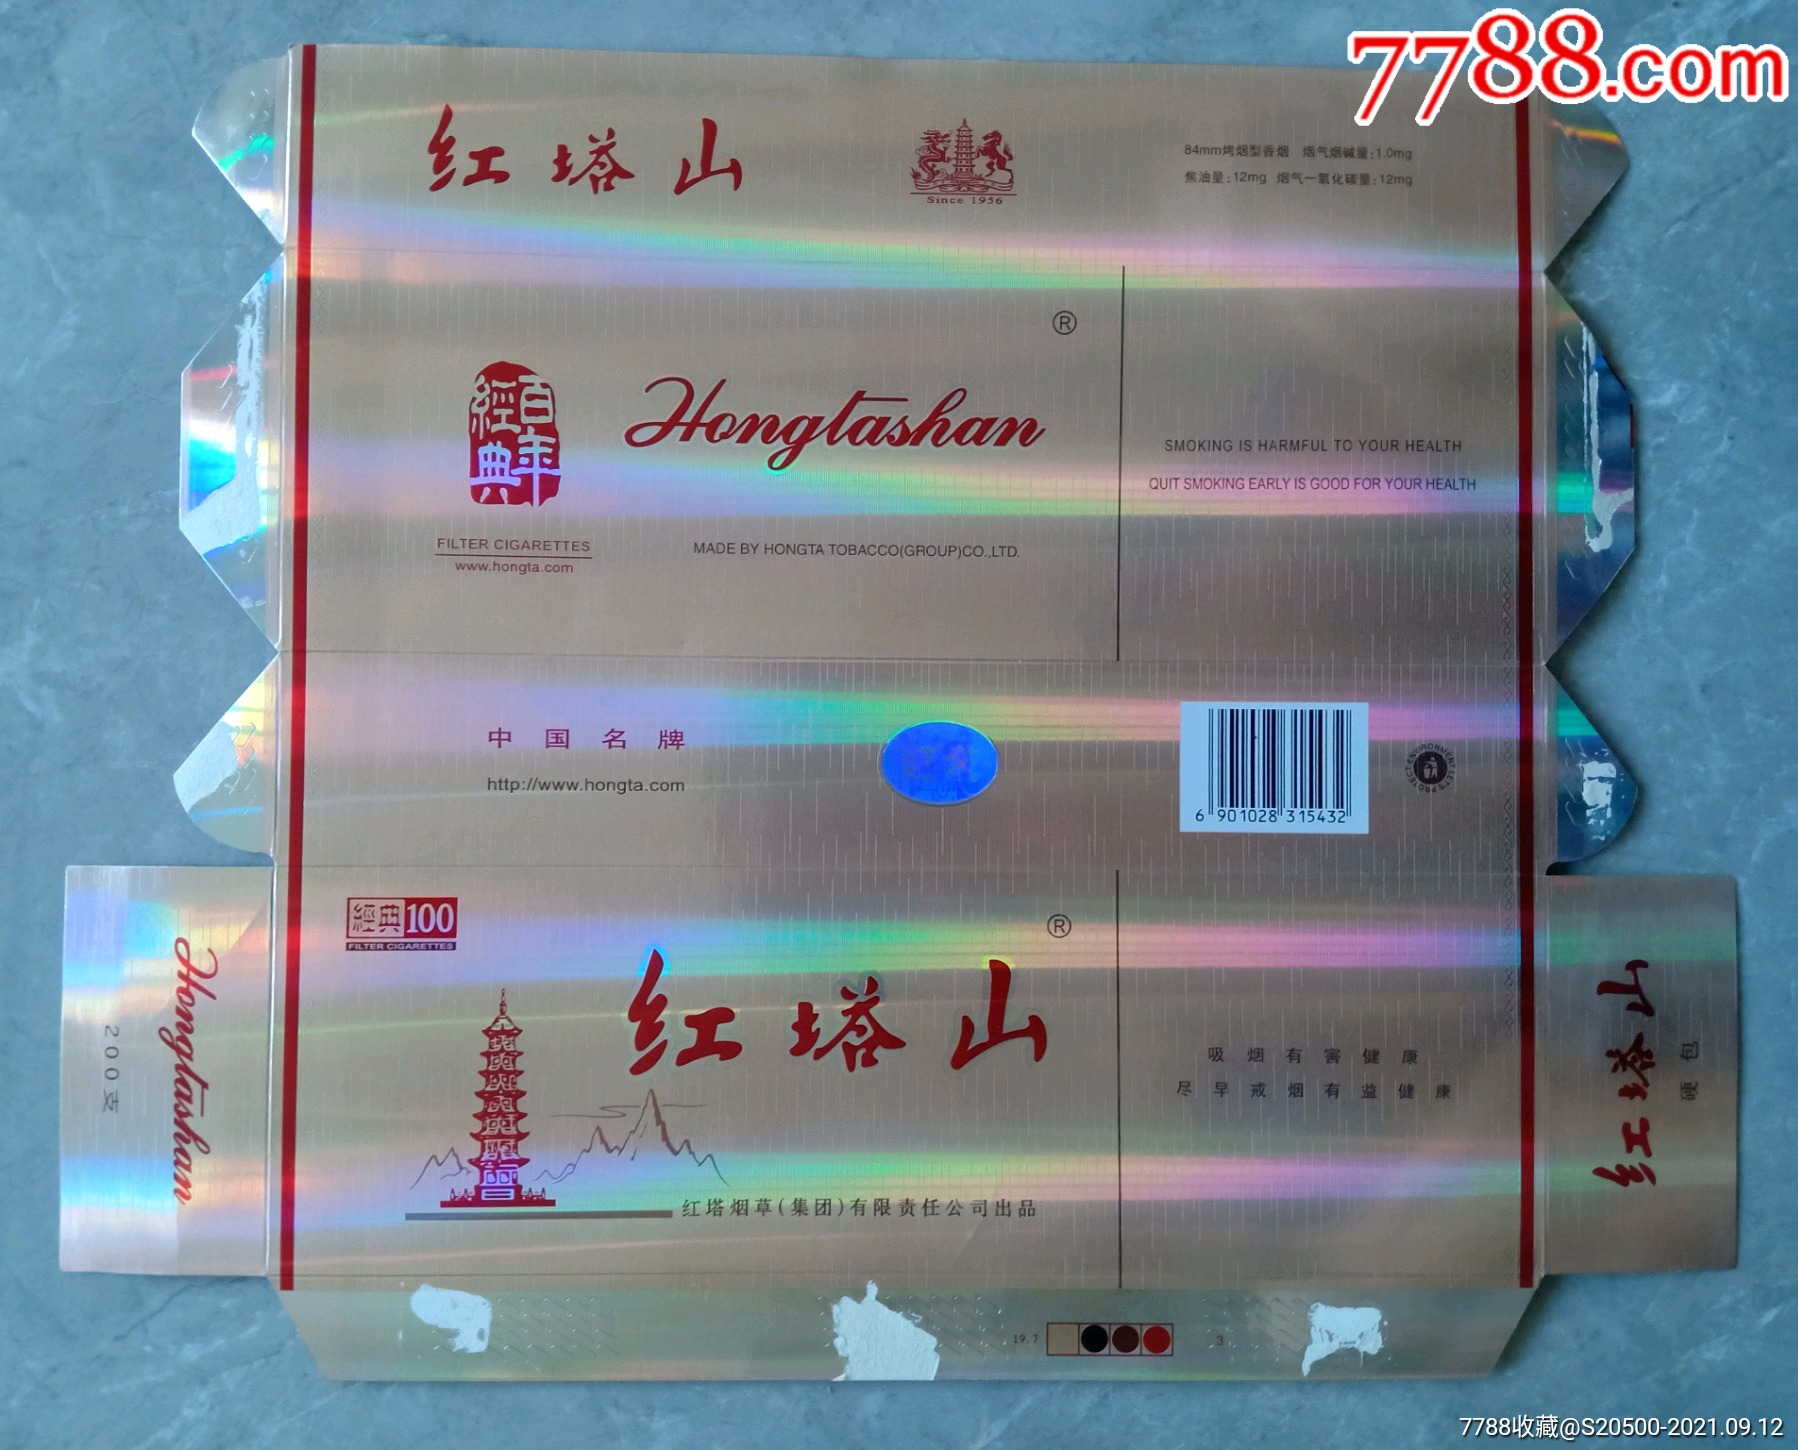 红塔山硬经典1003中国名牌尽早版315432焦油12mg红塔烟草集团